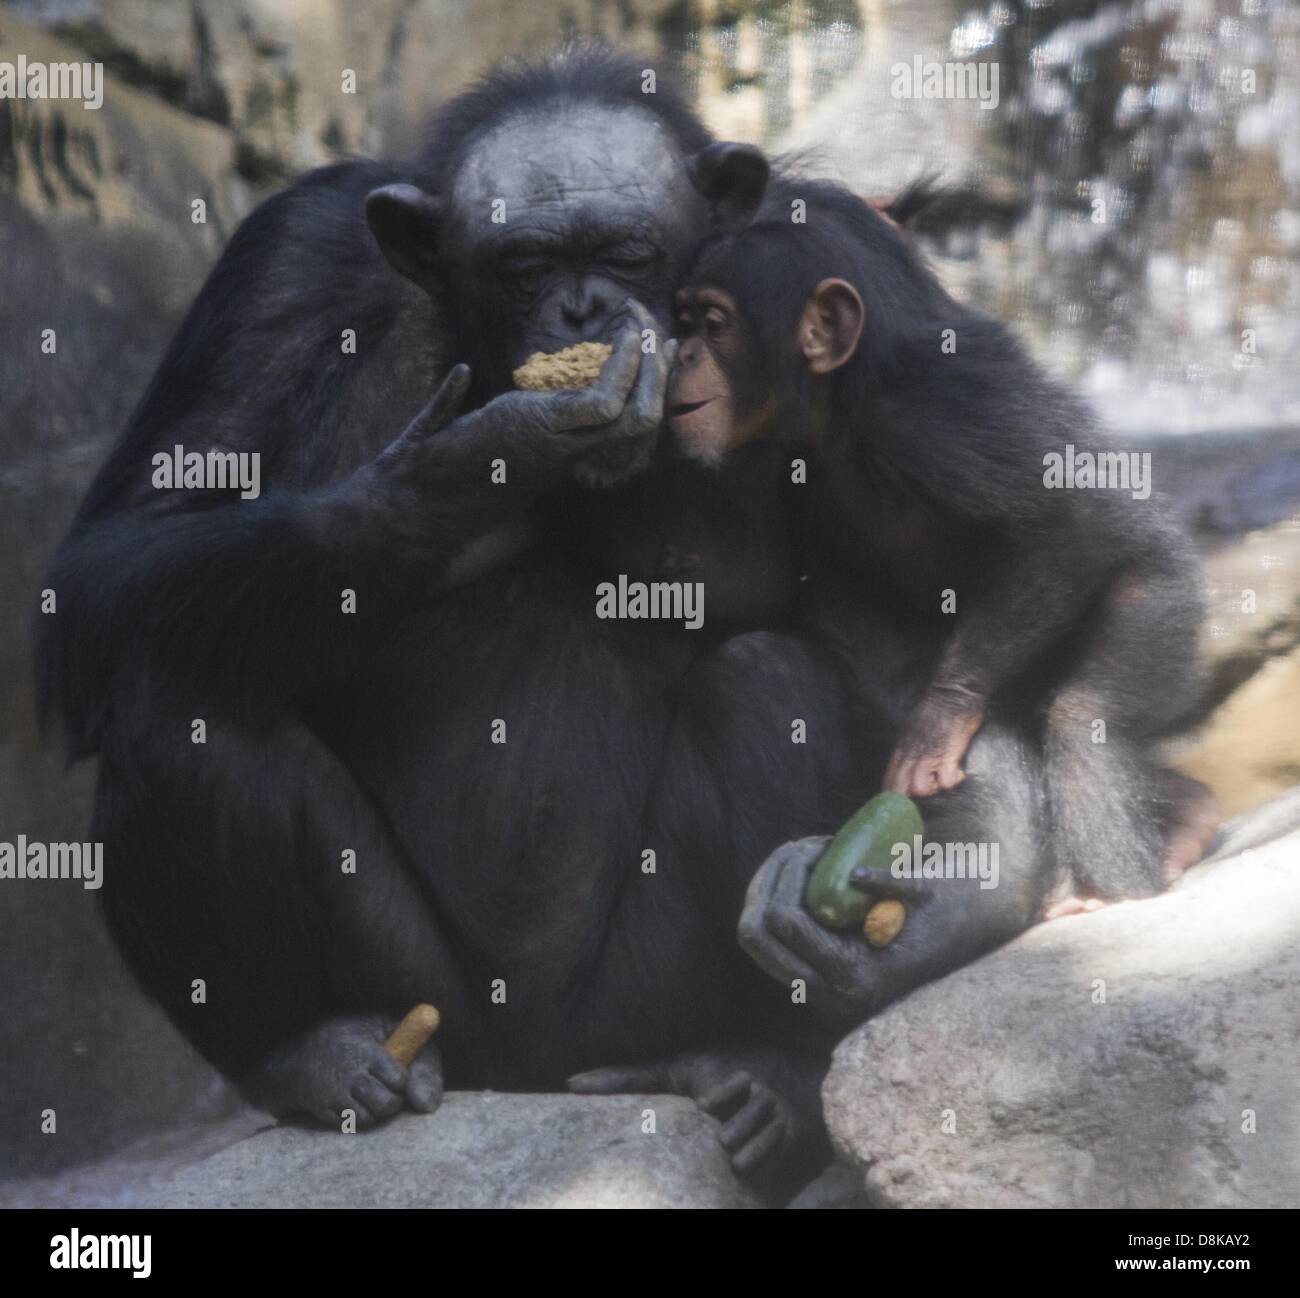 30 maggio 2013 - Los Angeles, California, Stati Uniti - di uno scimpanzé Madre, Regina mangia con il suo bambino femmina, Zuri, giovedì 30 maggio 2013 presso il scimpanzé di Monti Mahale presentano presso il Los Angeles Zoo. Negli ultimi dieci mesi, il L.A. Giardino zoologico ha avuto tre baby scimpanzé nato. Il primo denominato Zuri è nato a Madre Regina sulla luglio 23, 2012. Il 8 marzo 2013, Yoshi ha dato nascita a Uki ed infine il 22 aprile 2013, Gracie ha dato i natali a un ancora, unnamed neonato. Tutti e tre i ragazzi sono femmine. Foto Stock